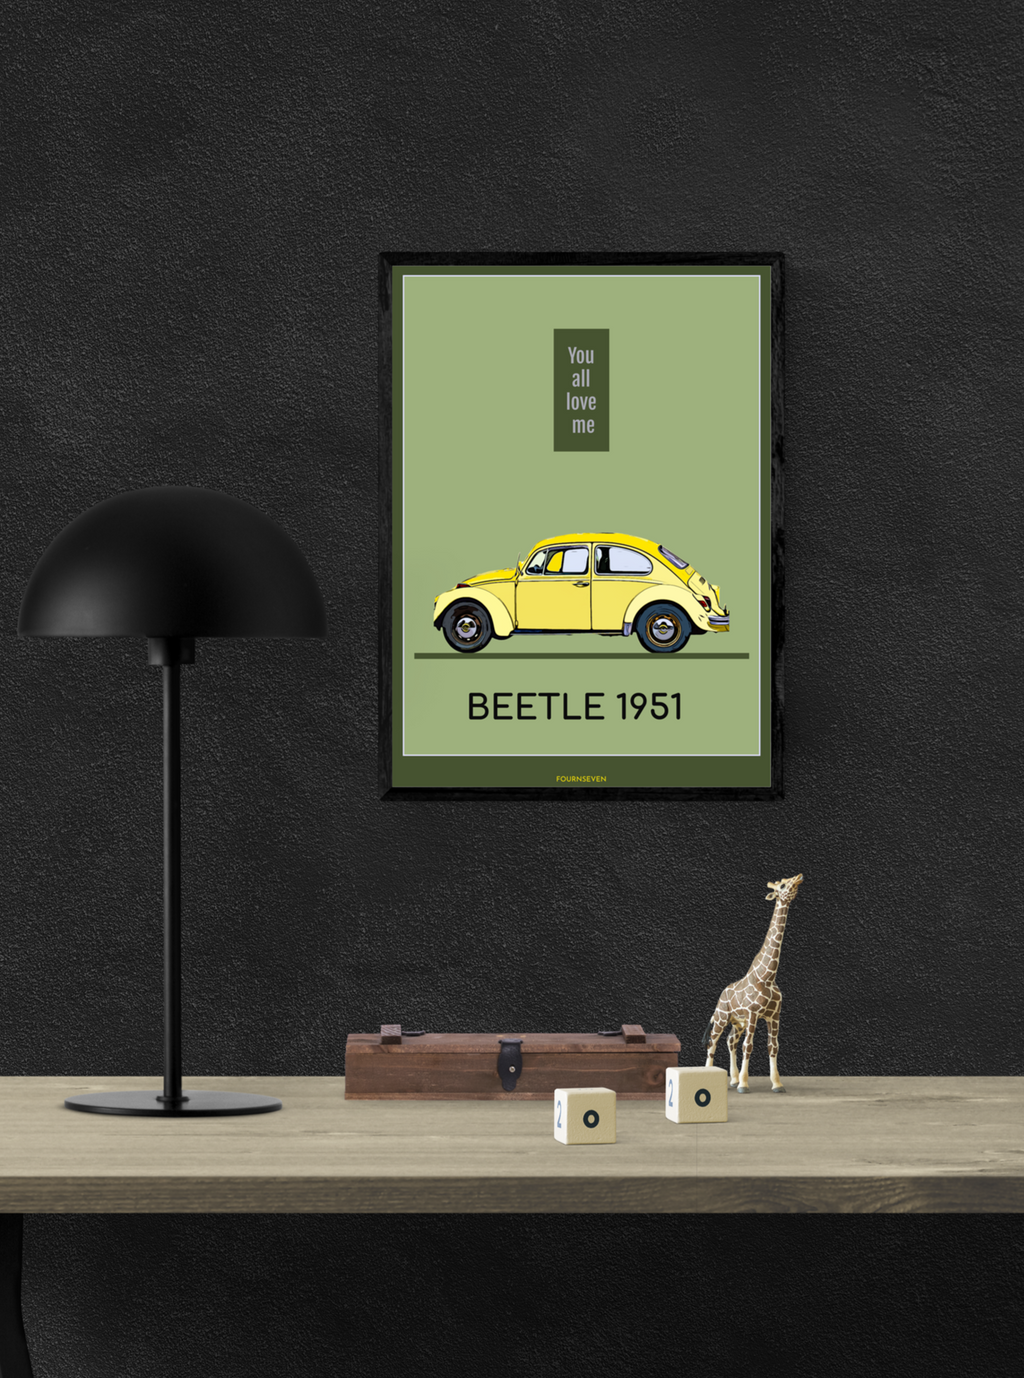 BEETLE 1951. Vintage Beetle poster.